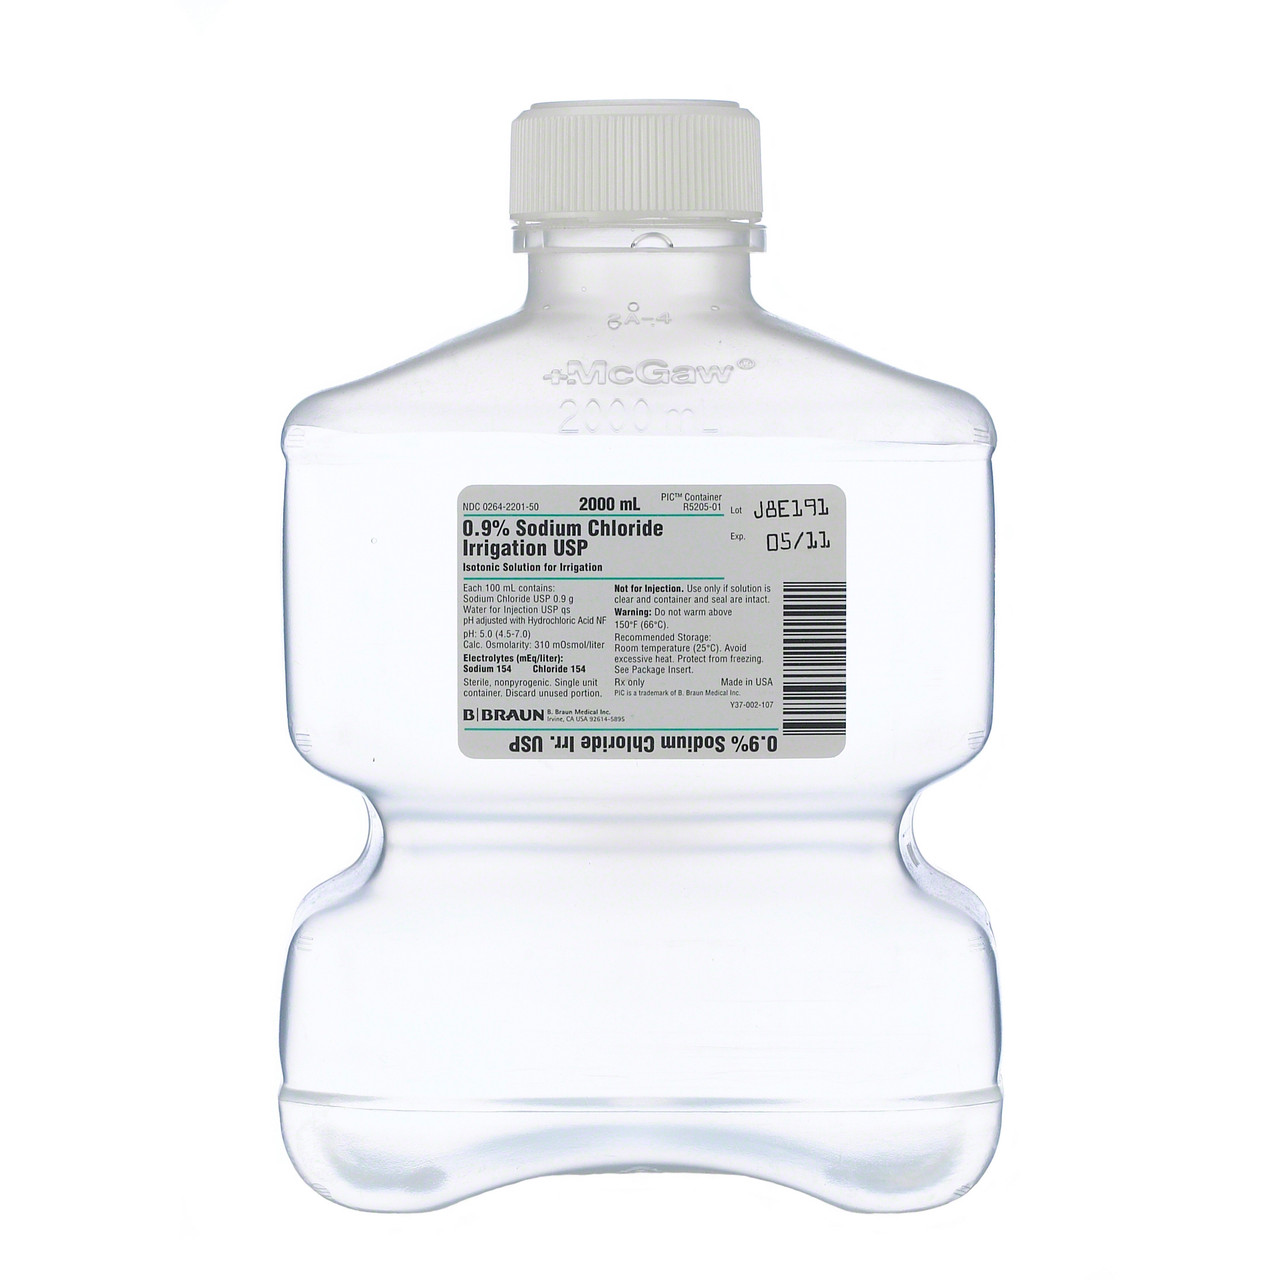 Buy 500ml Plastic Spray Bottle Container Disposable Plastic Liquid